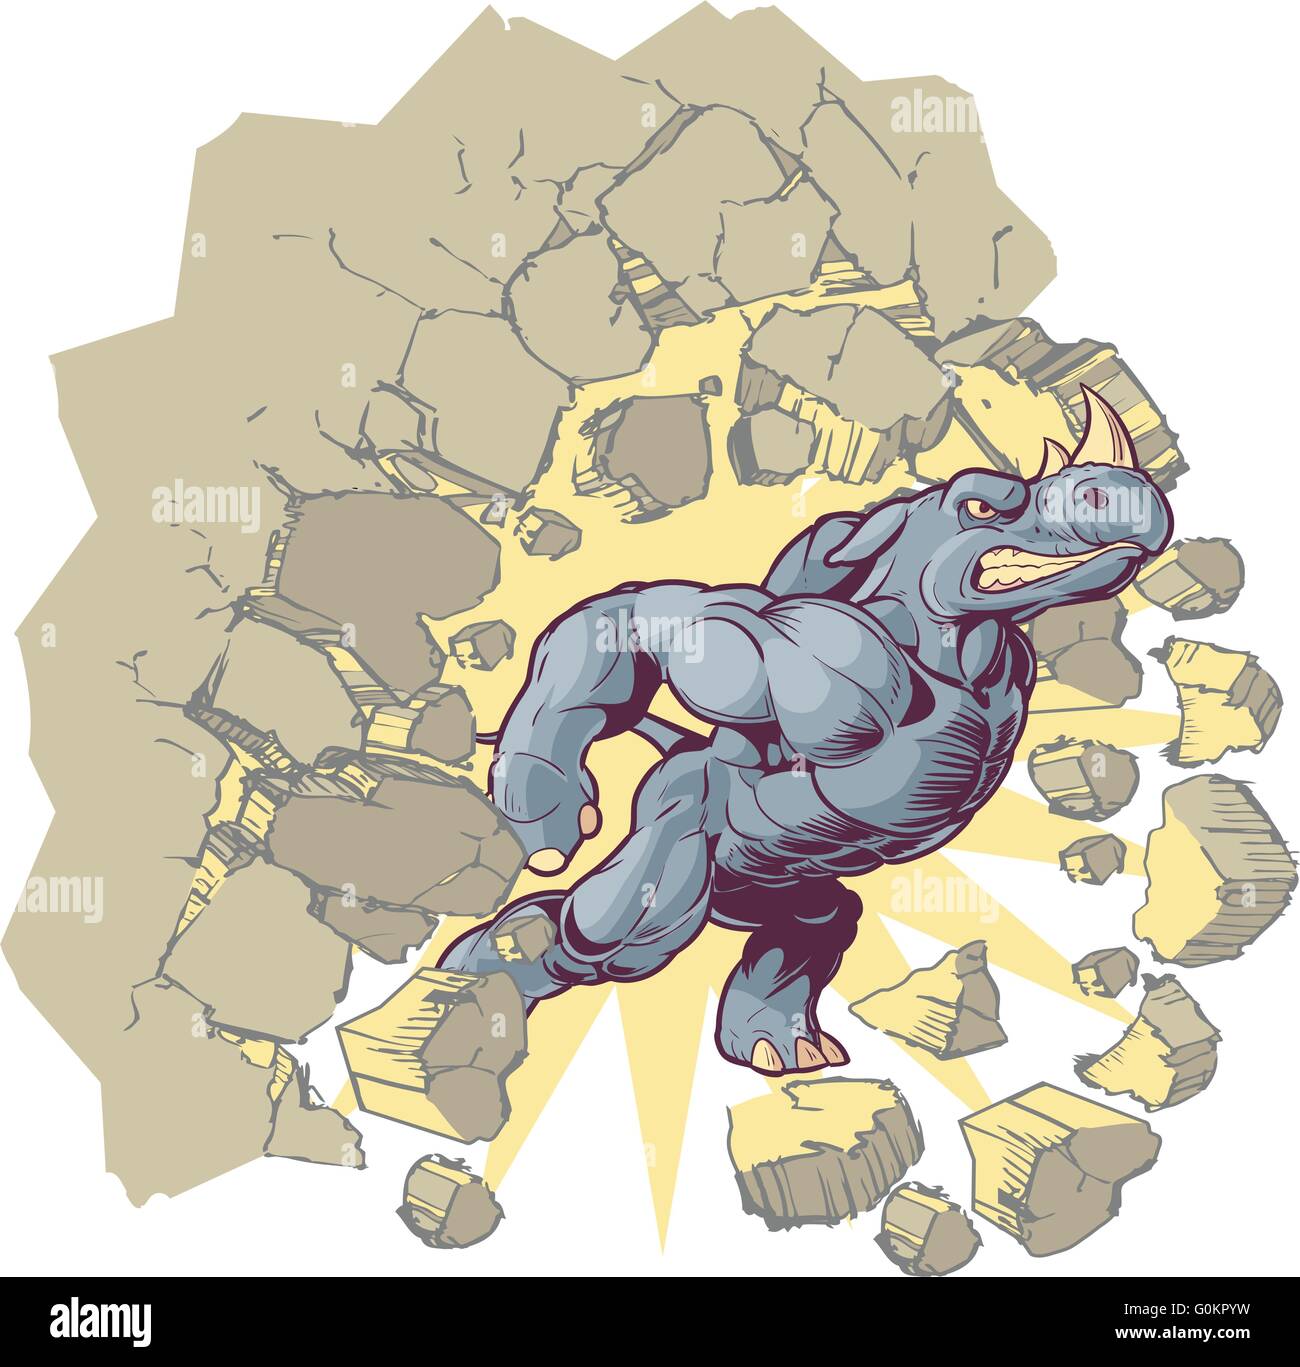 Vector Cartoon Clip Art Illustration of an Anthropomorphic Mascot Rhino Crashing through a wall. Stock Vector